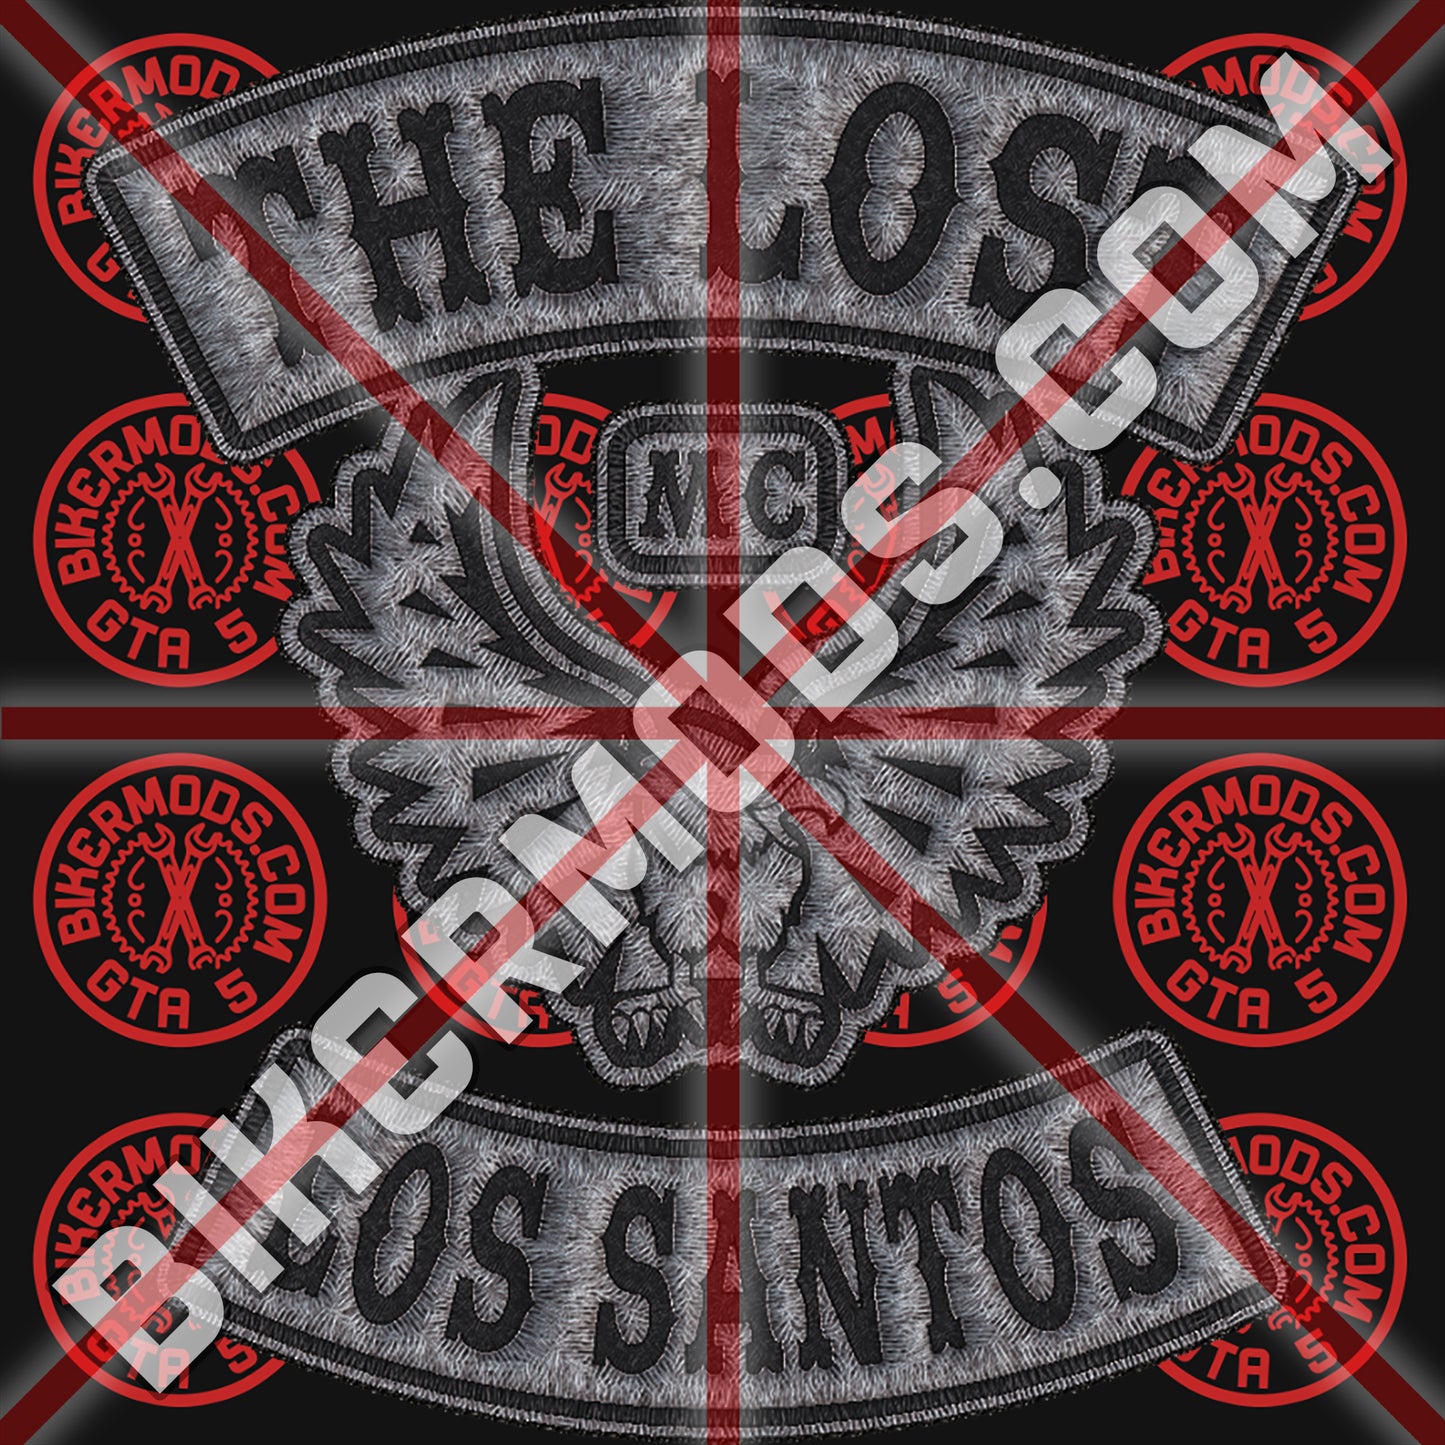 The Lost MC (Los Santos) Westcoast Style